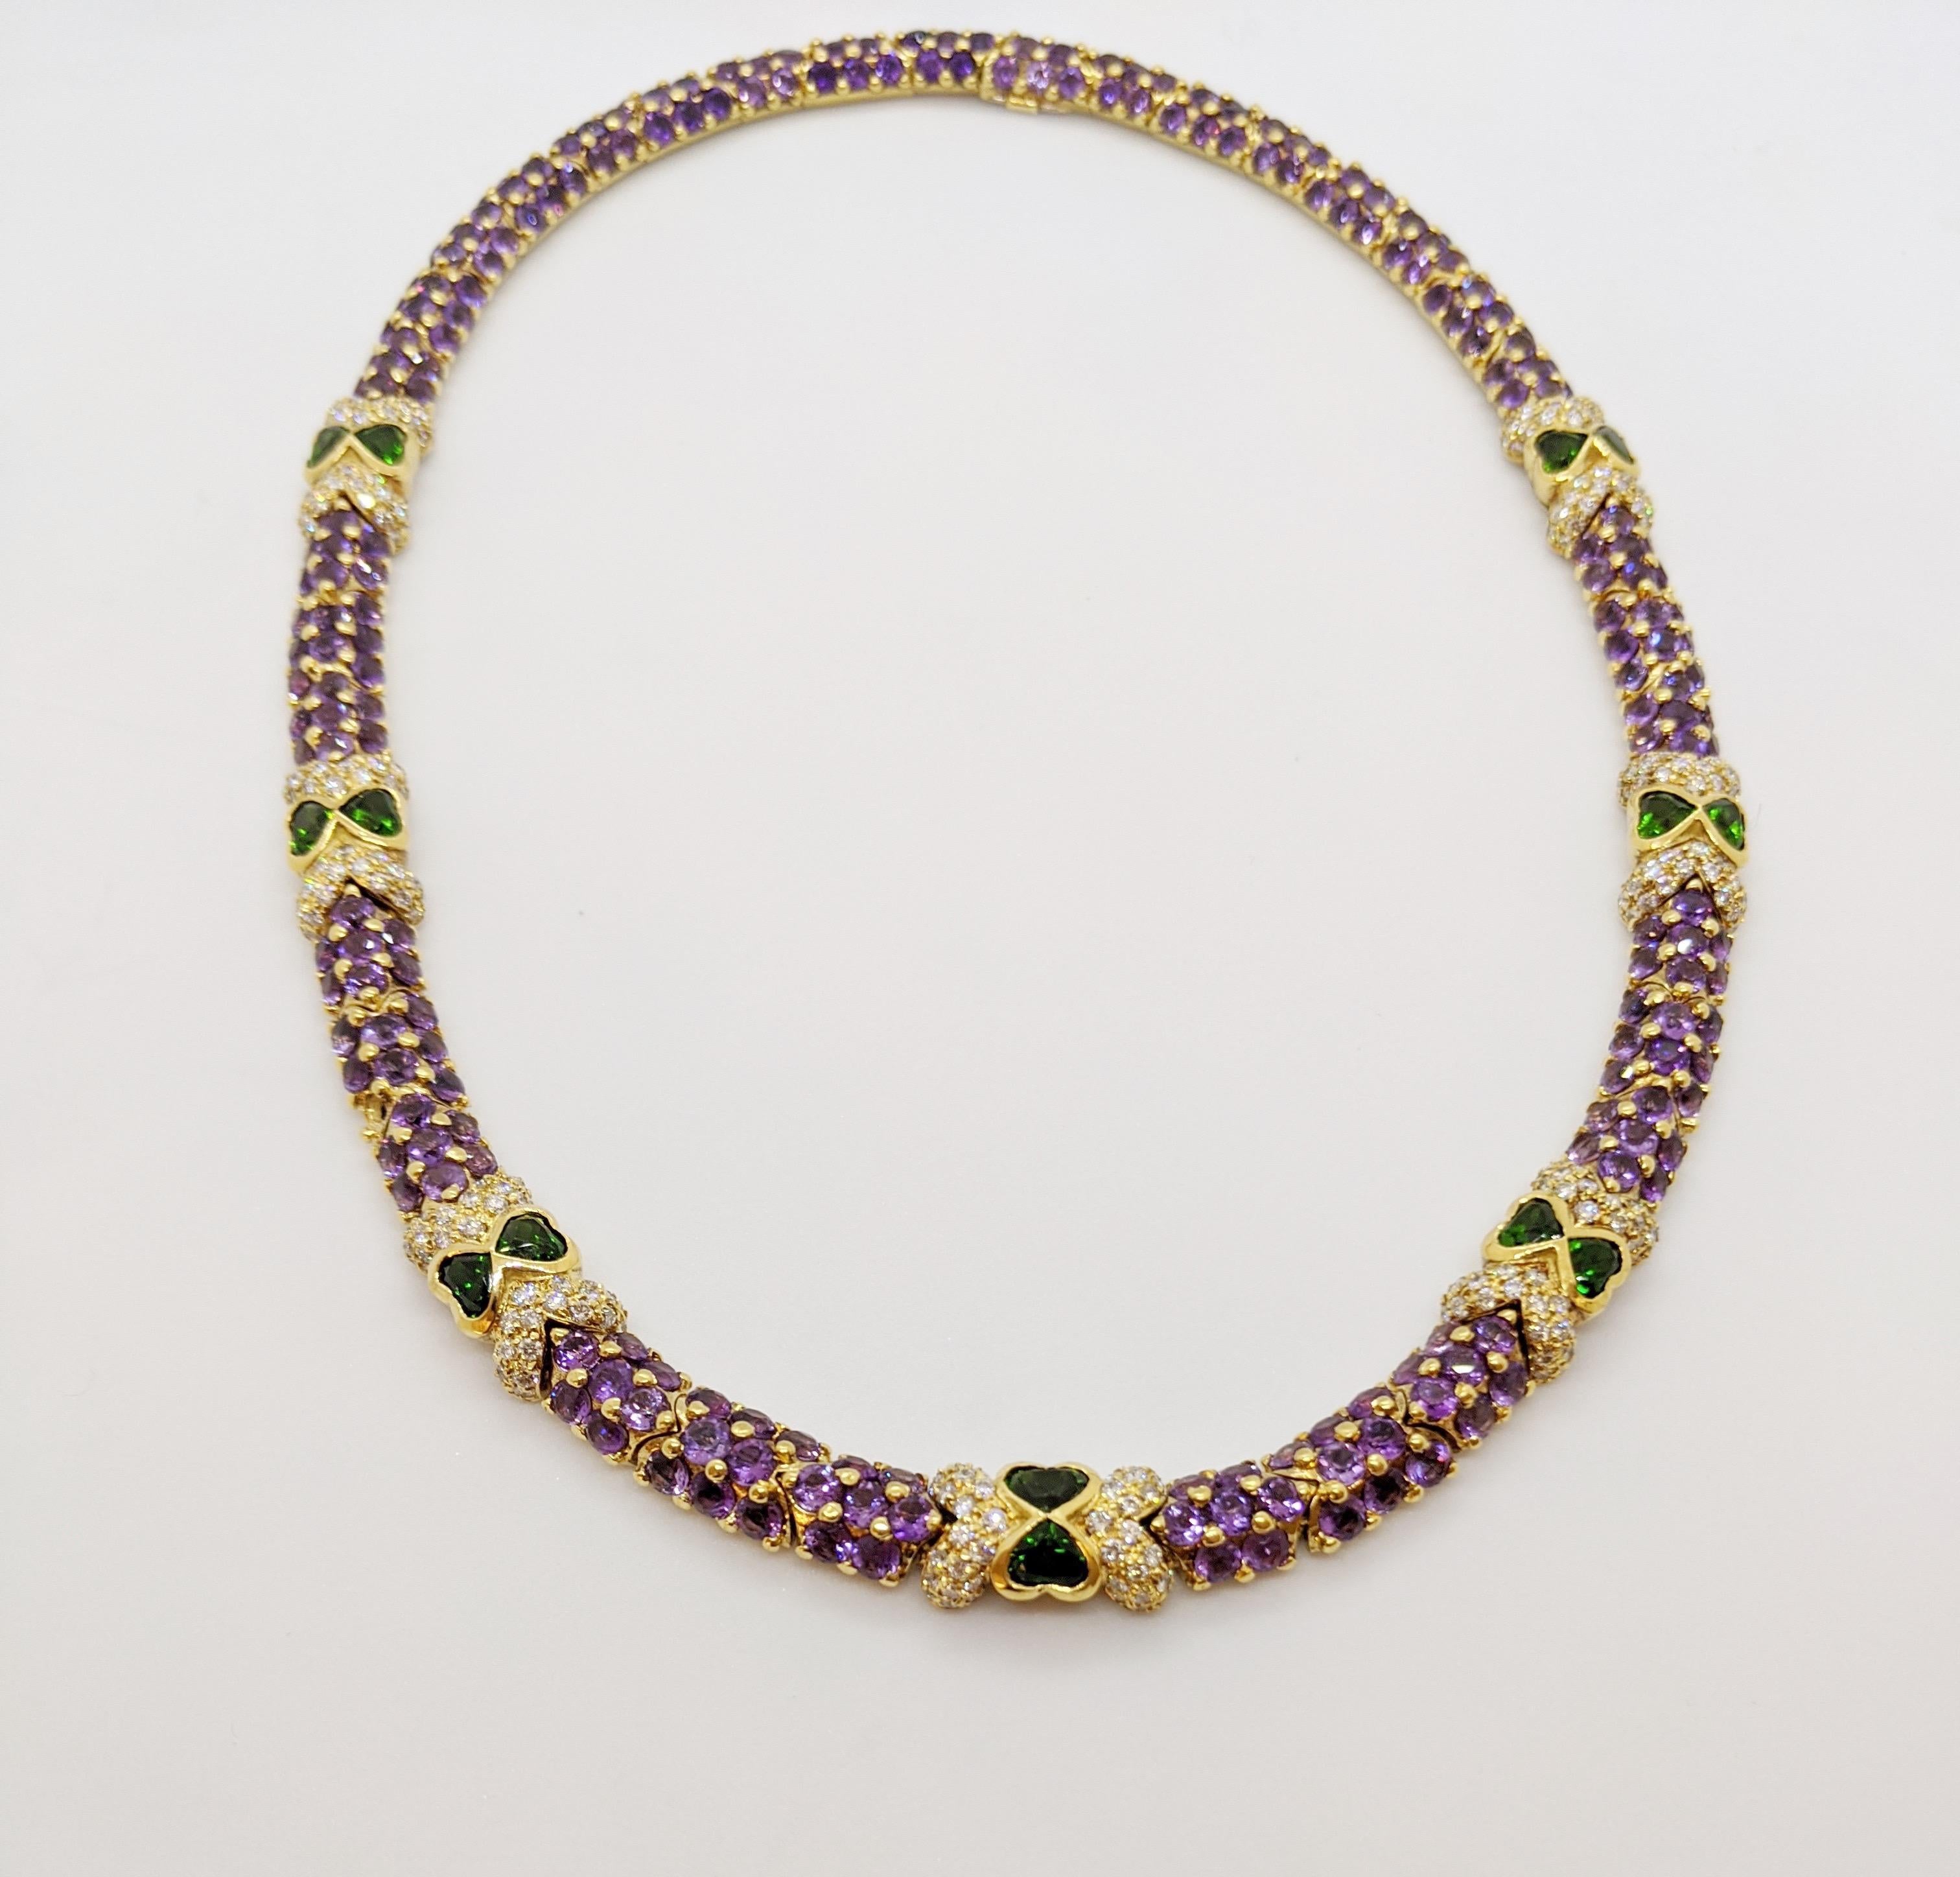 Diese Halskette wurde von G. Verdi aus Italien entworfen. Die runden Amethyst-Steine mit Brillantschliff sind in 18 Karat gefasst  gelbgold  glieder mit Zacken, die einen schönen Perleneffekt ergeben. Runde Brillanten und 14 herzförmige Tsavoriten